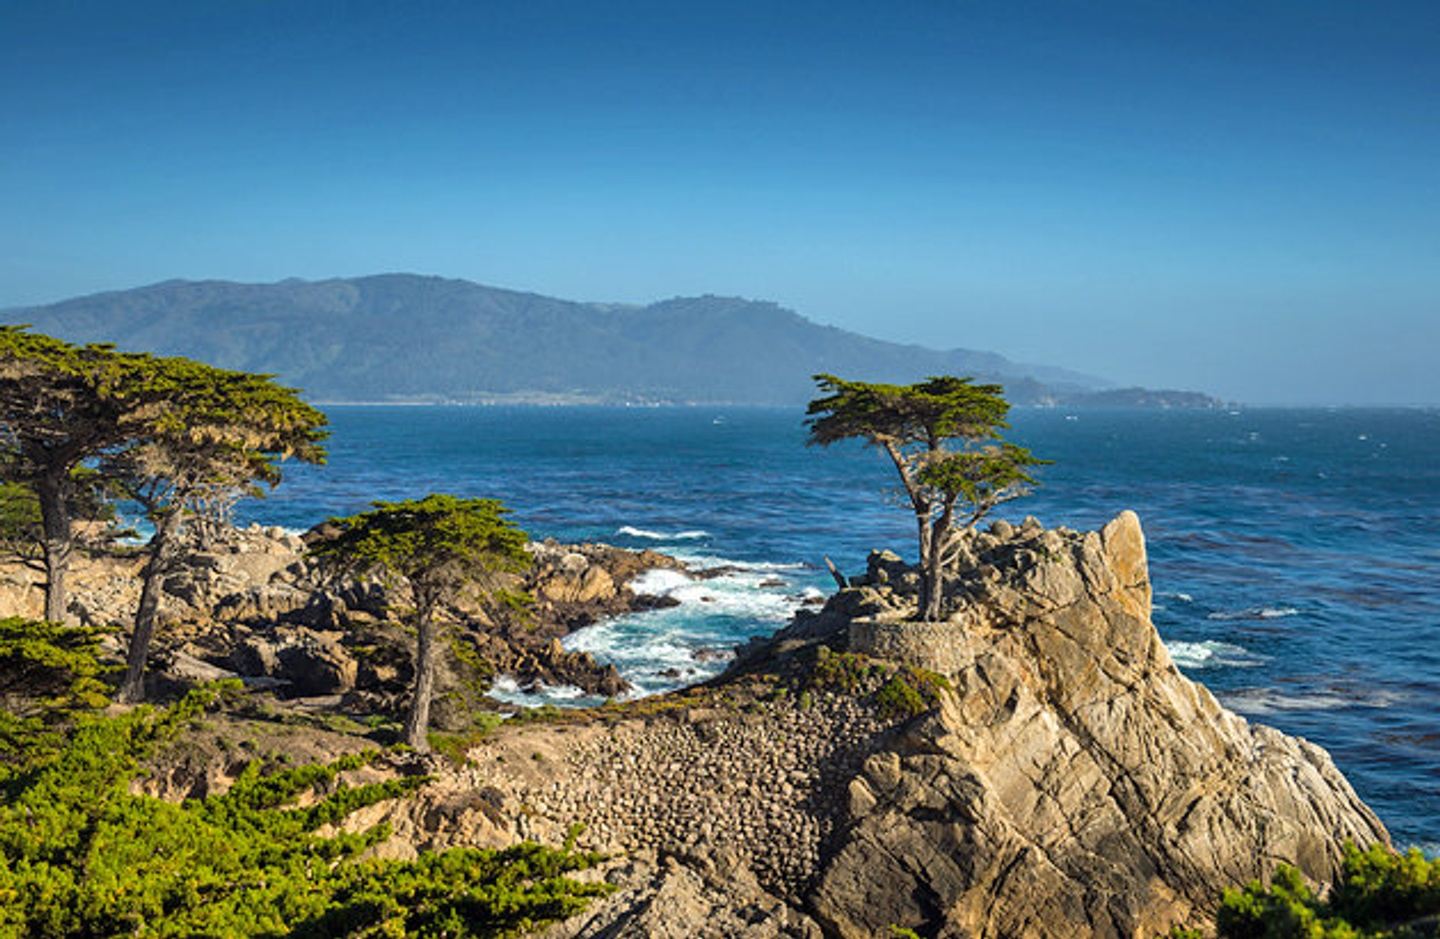 Monterey Seniors' Tour: Spring 2022